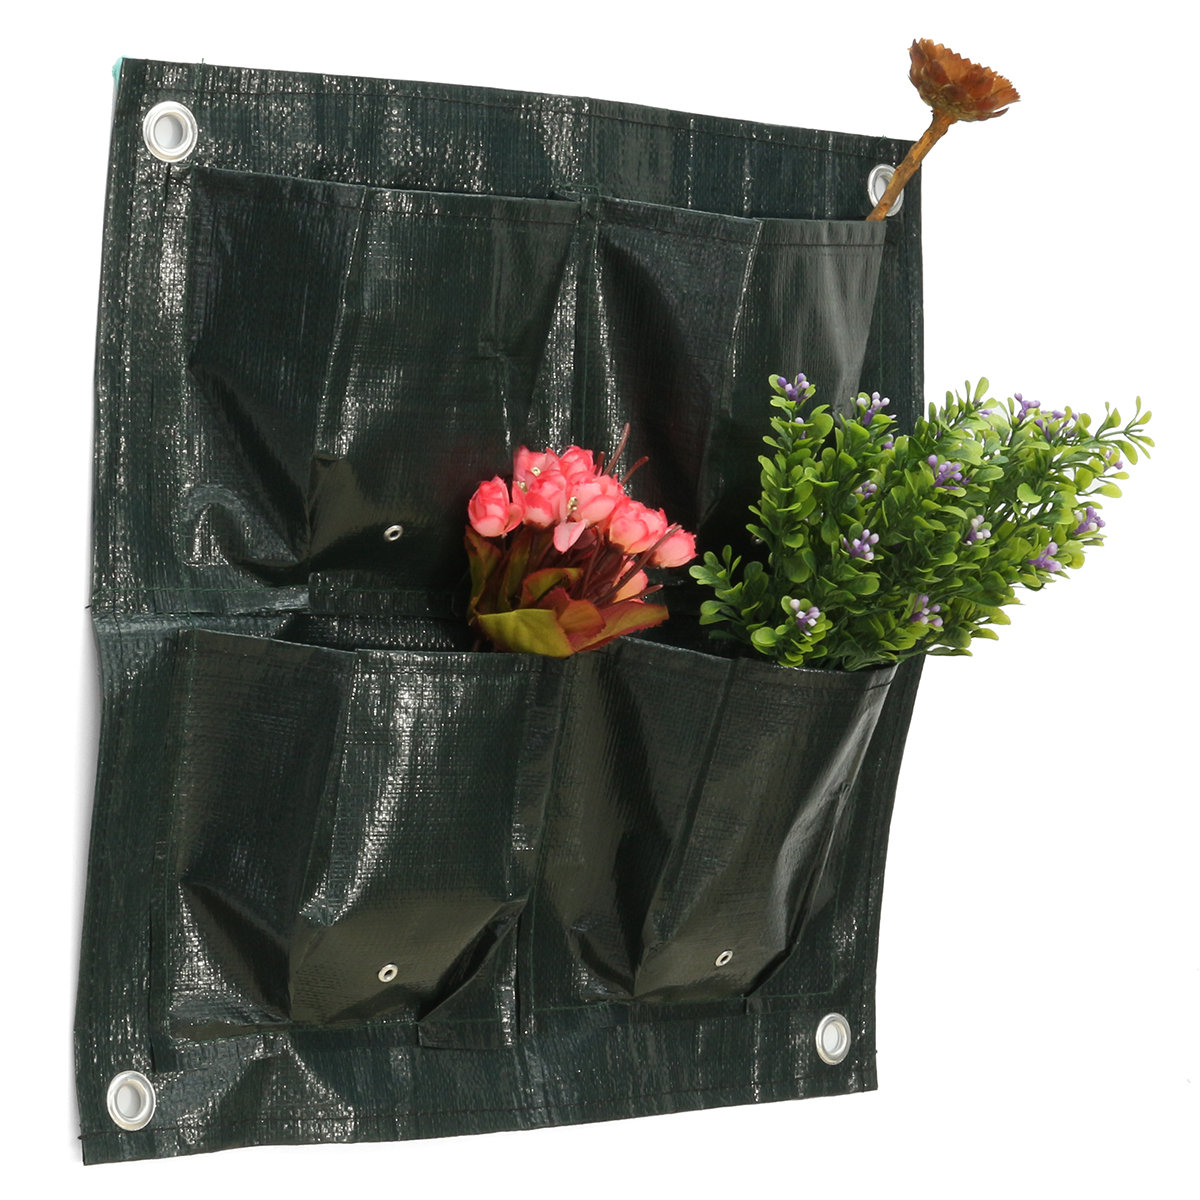 42x42cm 4 जेब गार्डन फूल पौधे रोपण बैग बैग पॉट बढ़ाना